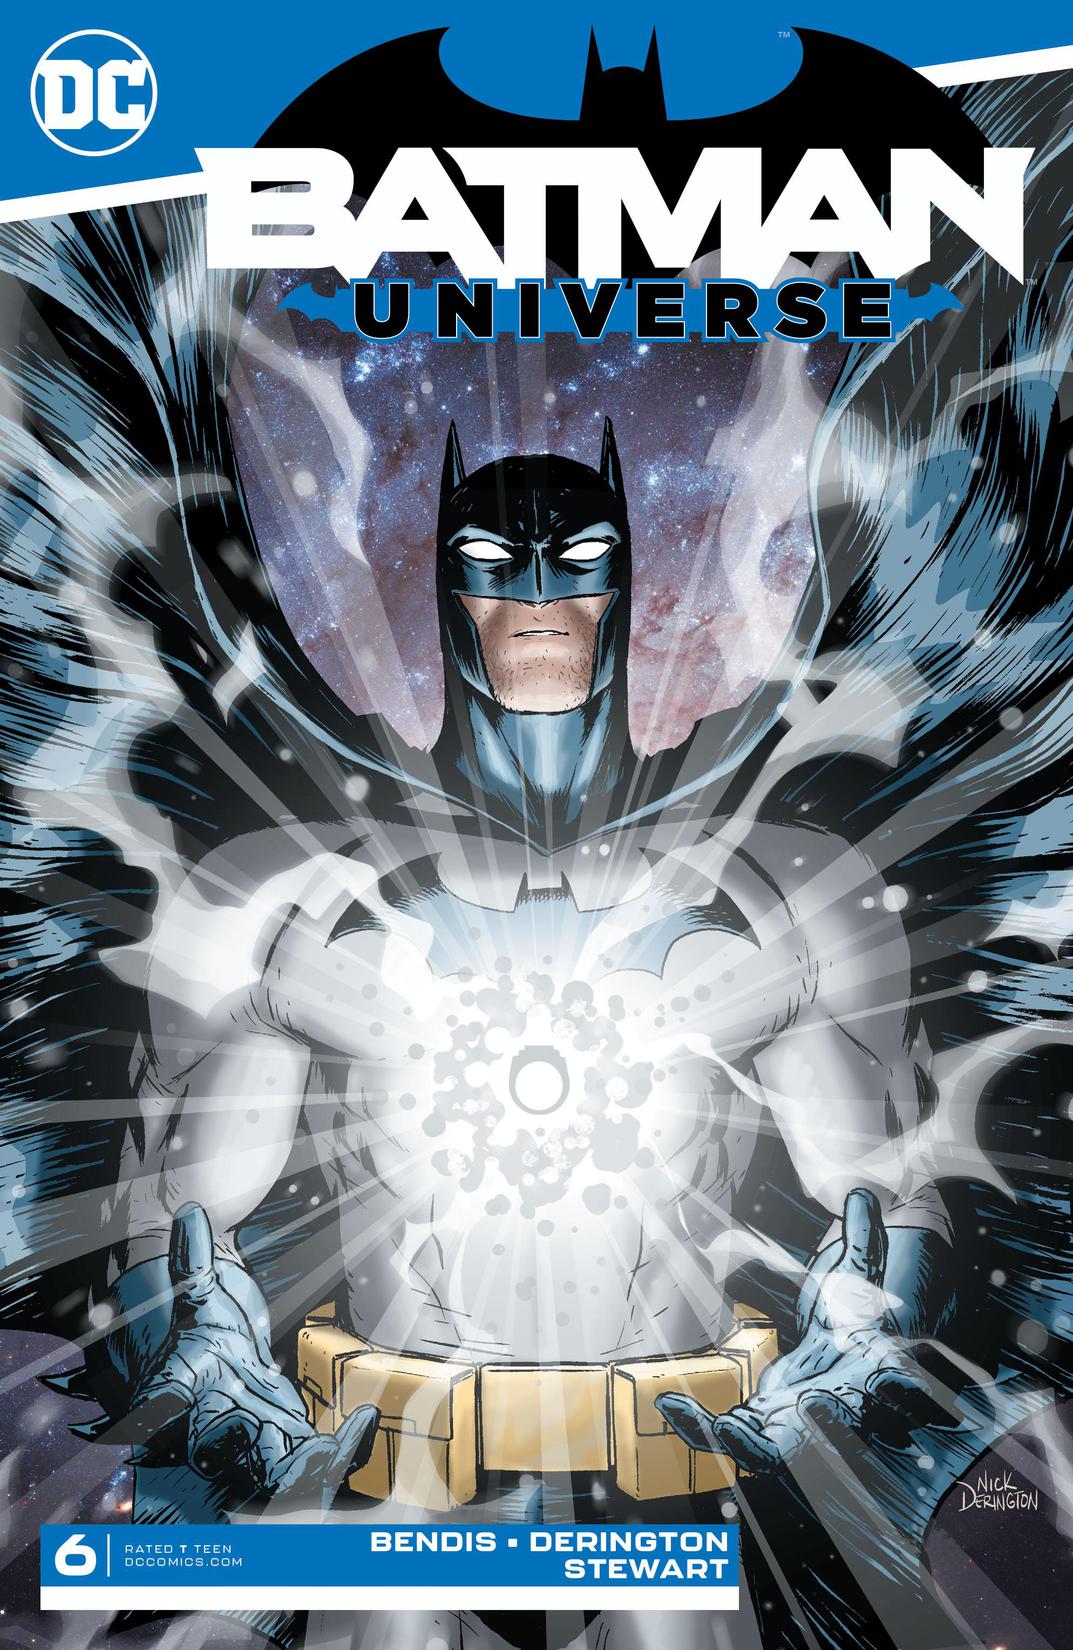 Batman: Universe #6 preview images